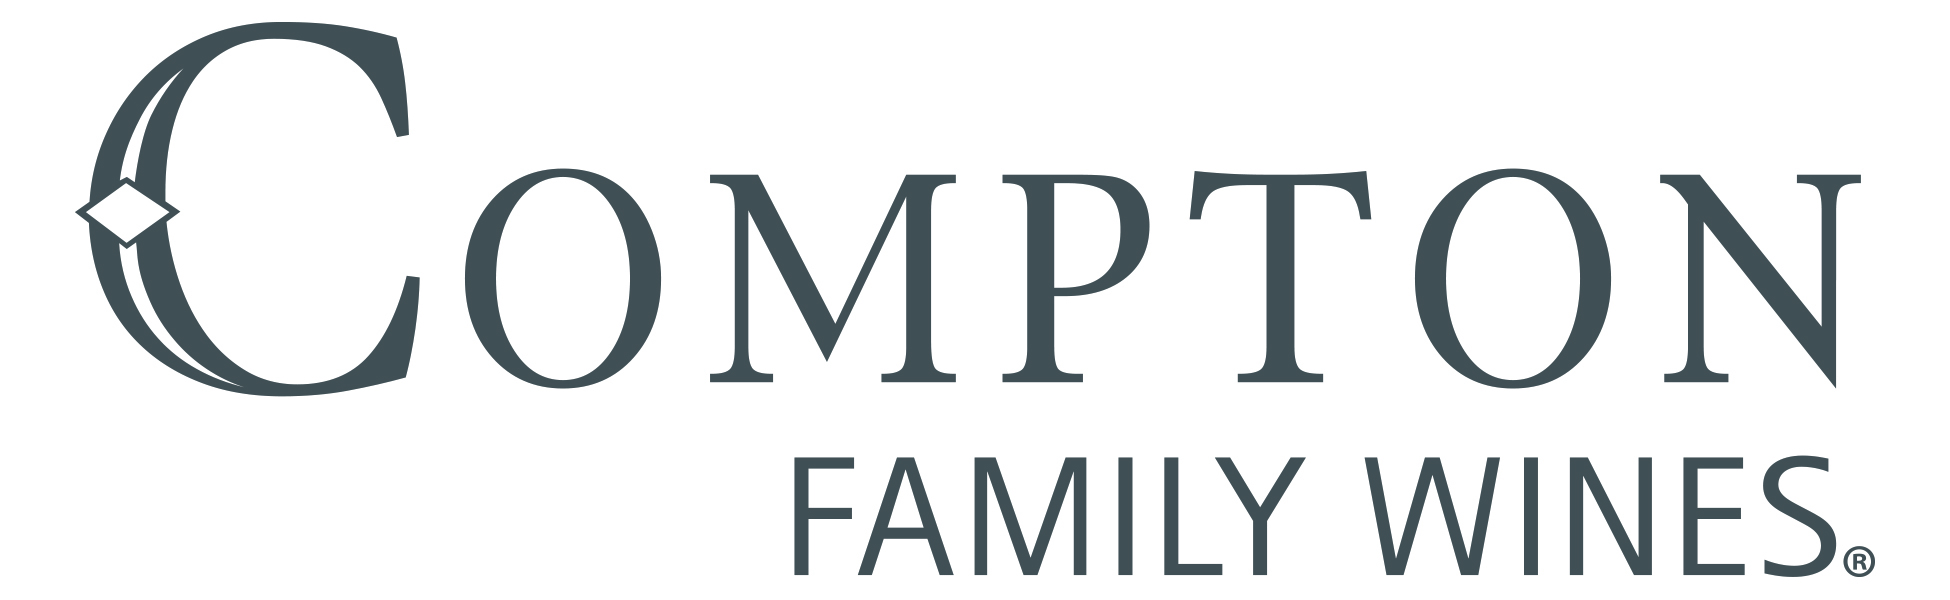 Compton Family Wines Logo